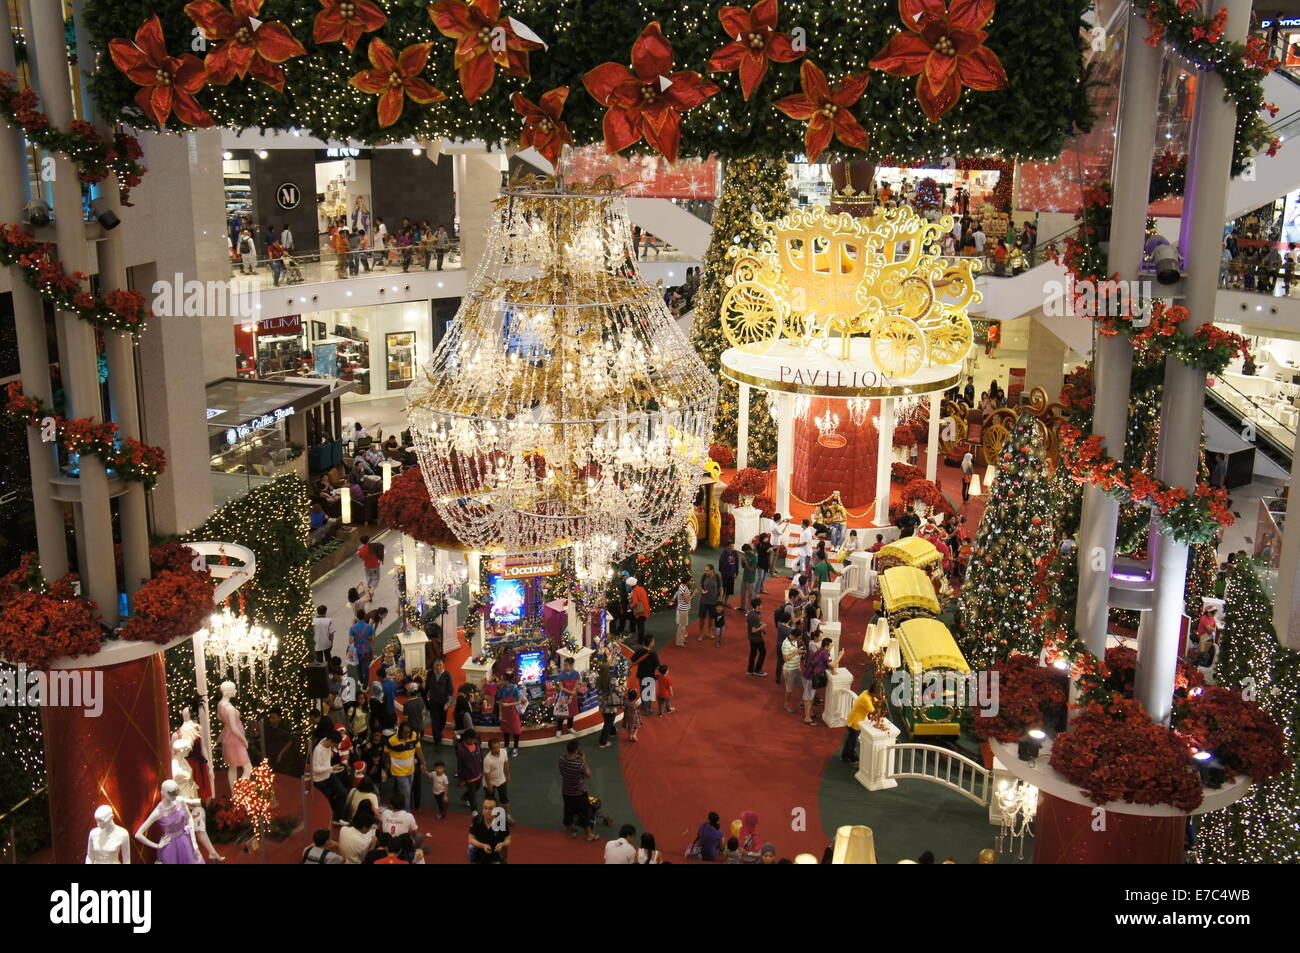 Christmas decorations in Pavilion shopping mall, Kuala Lumpur, Malaysia